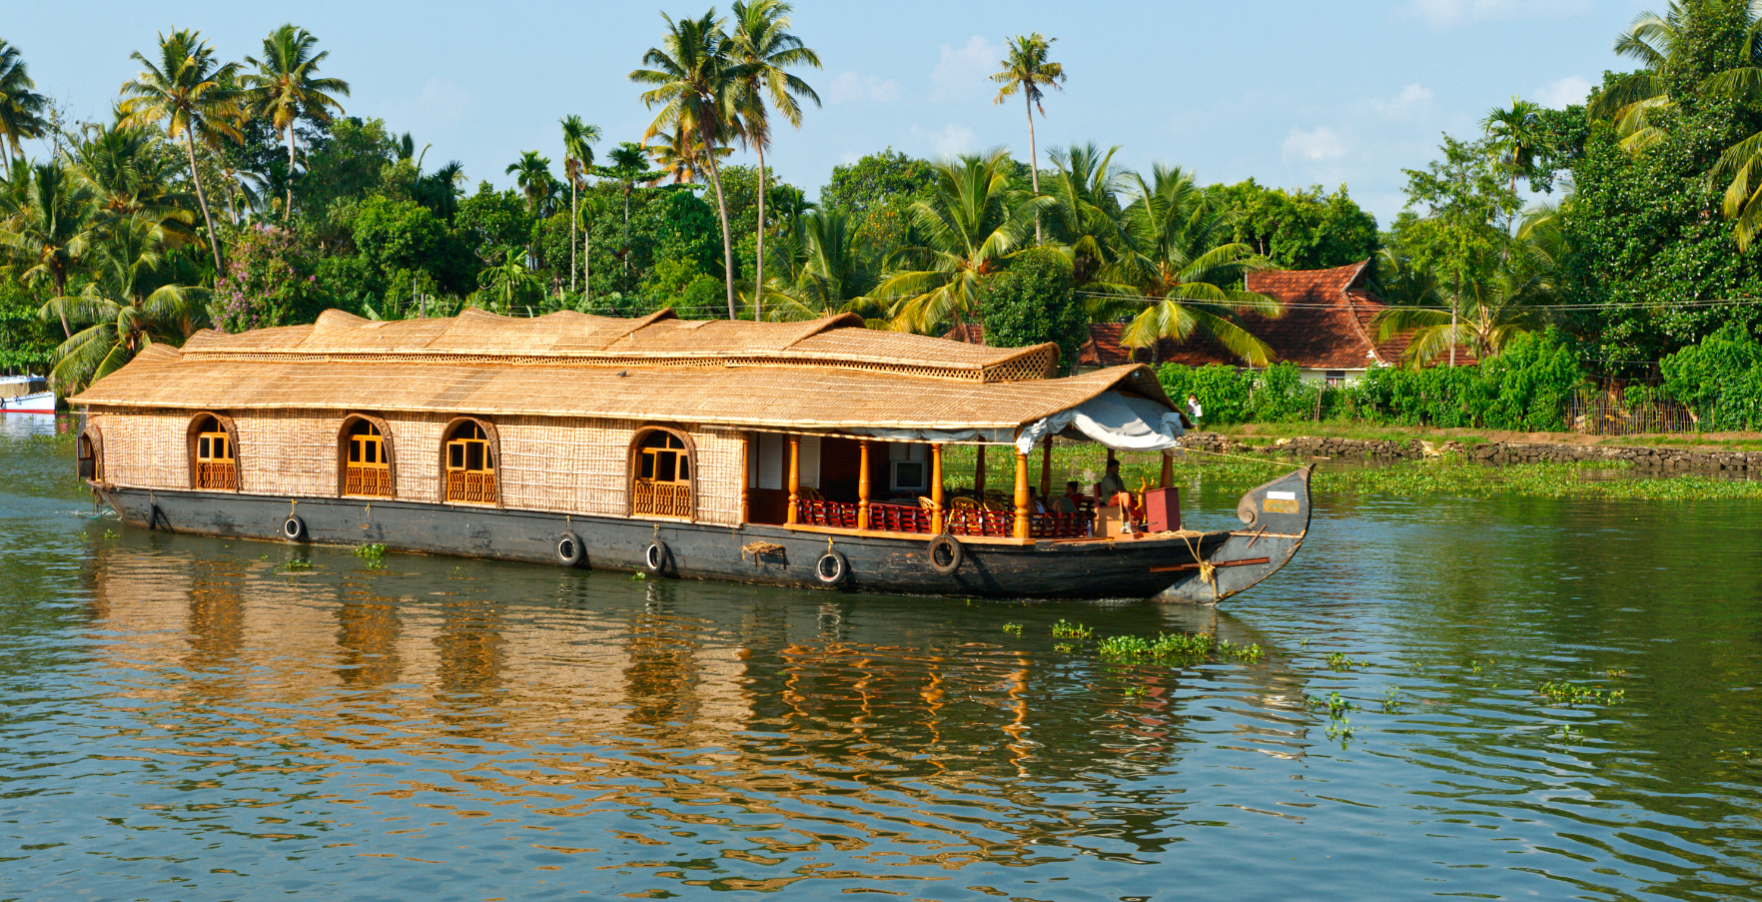 Viaggio in Kerala